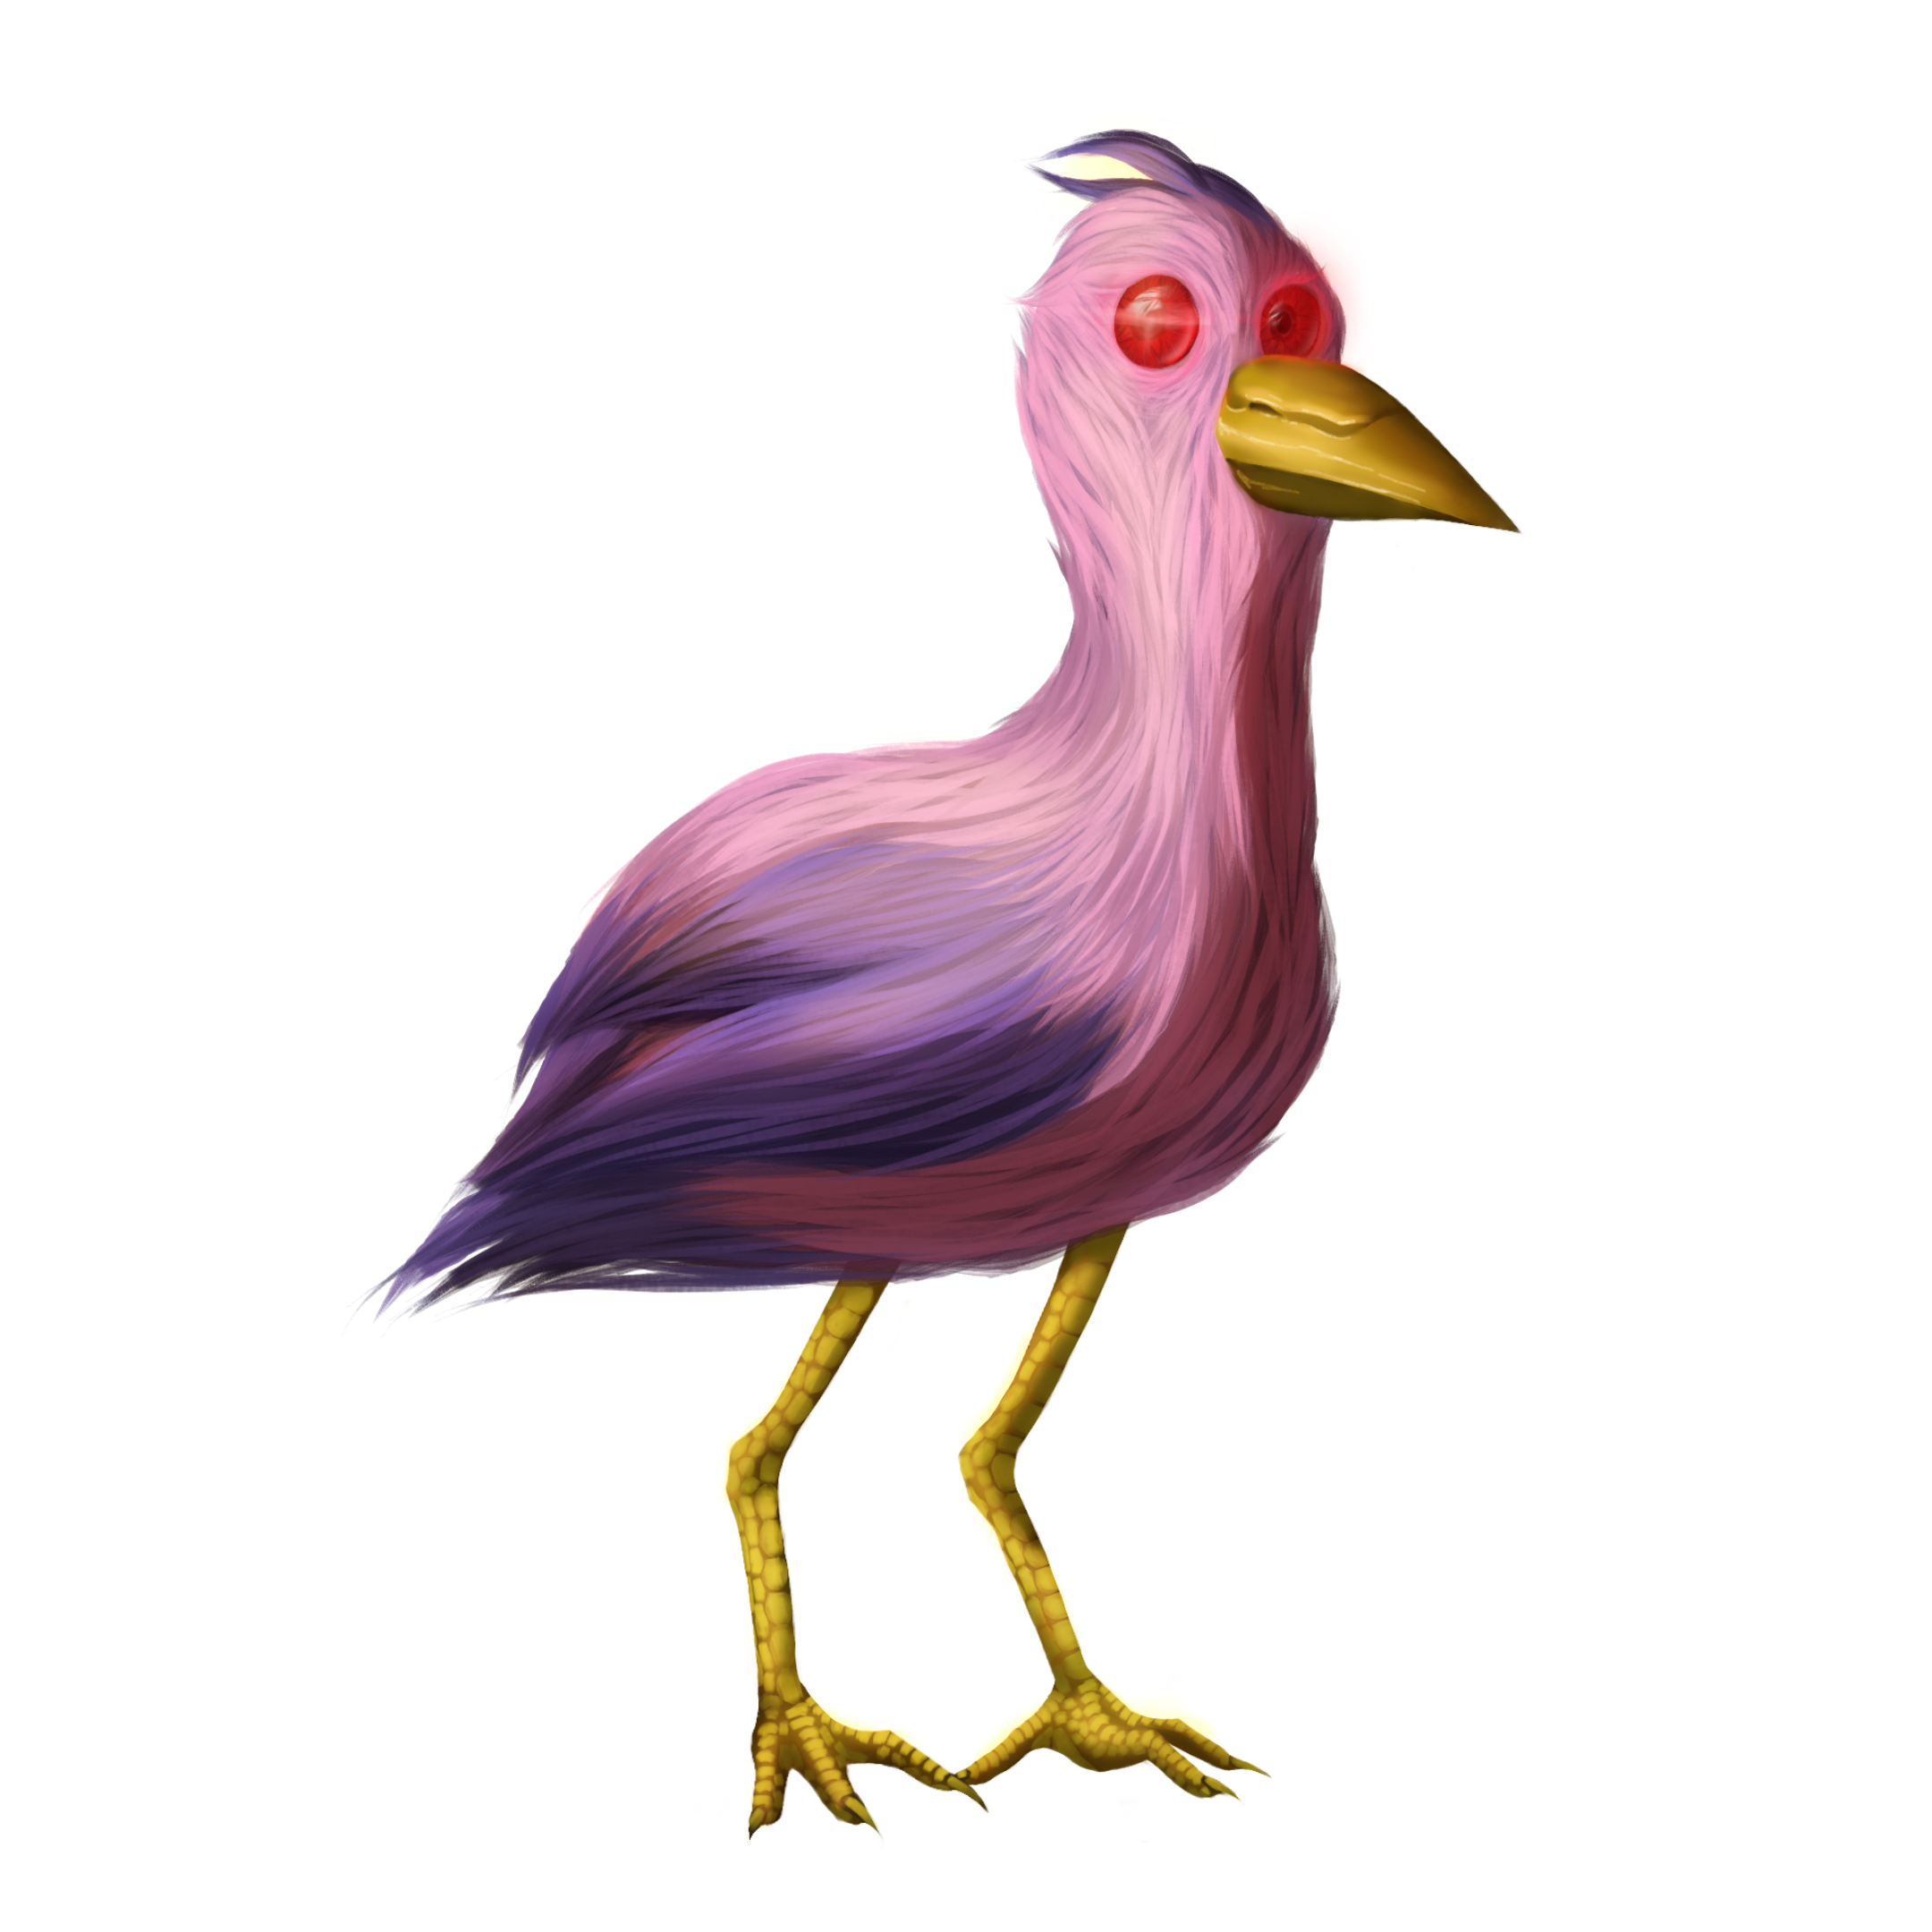 Opila Bird (Garten Of Banban) by DarkDragonDeception on DeviantArt